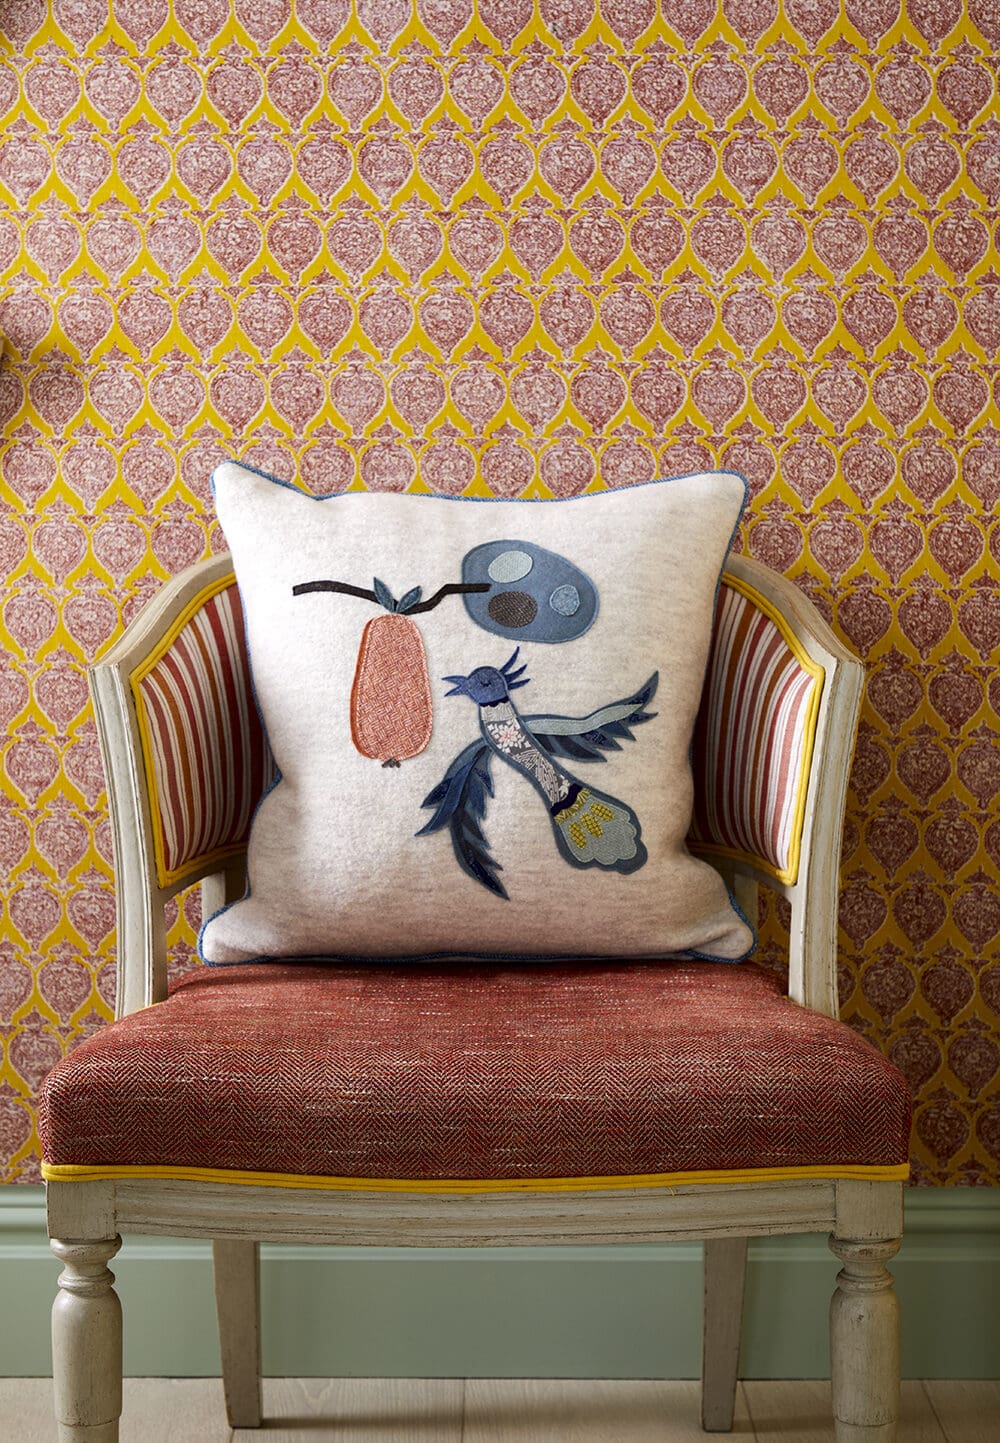 Kit Kemp interiors | A cushion appliquéd with a bird against a graphic orange wall